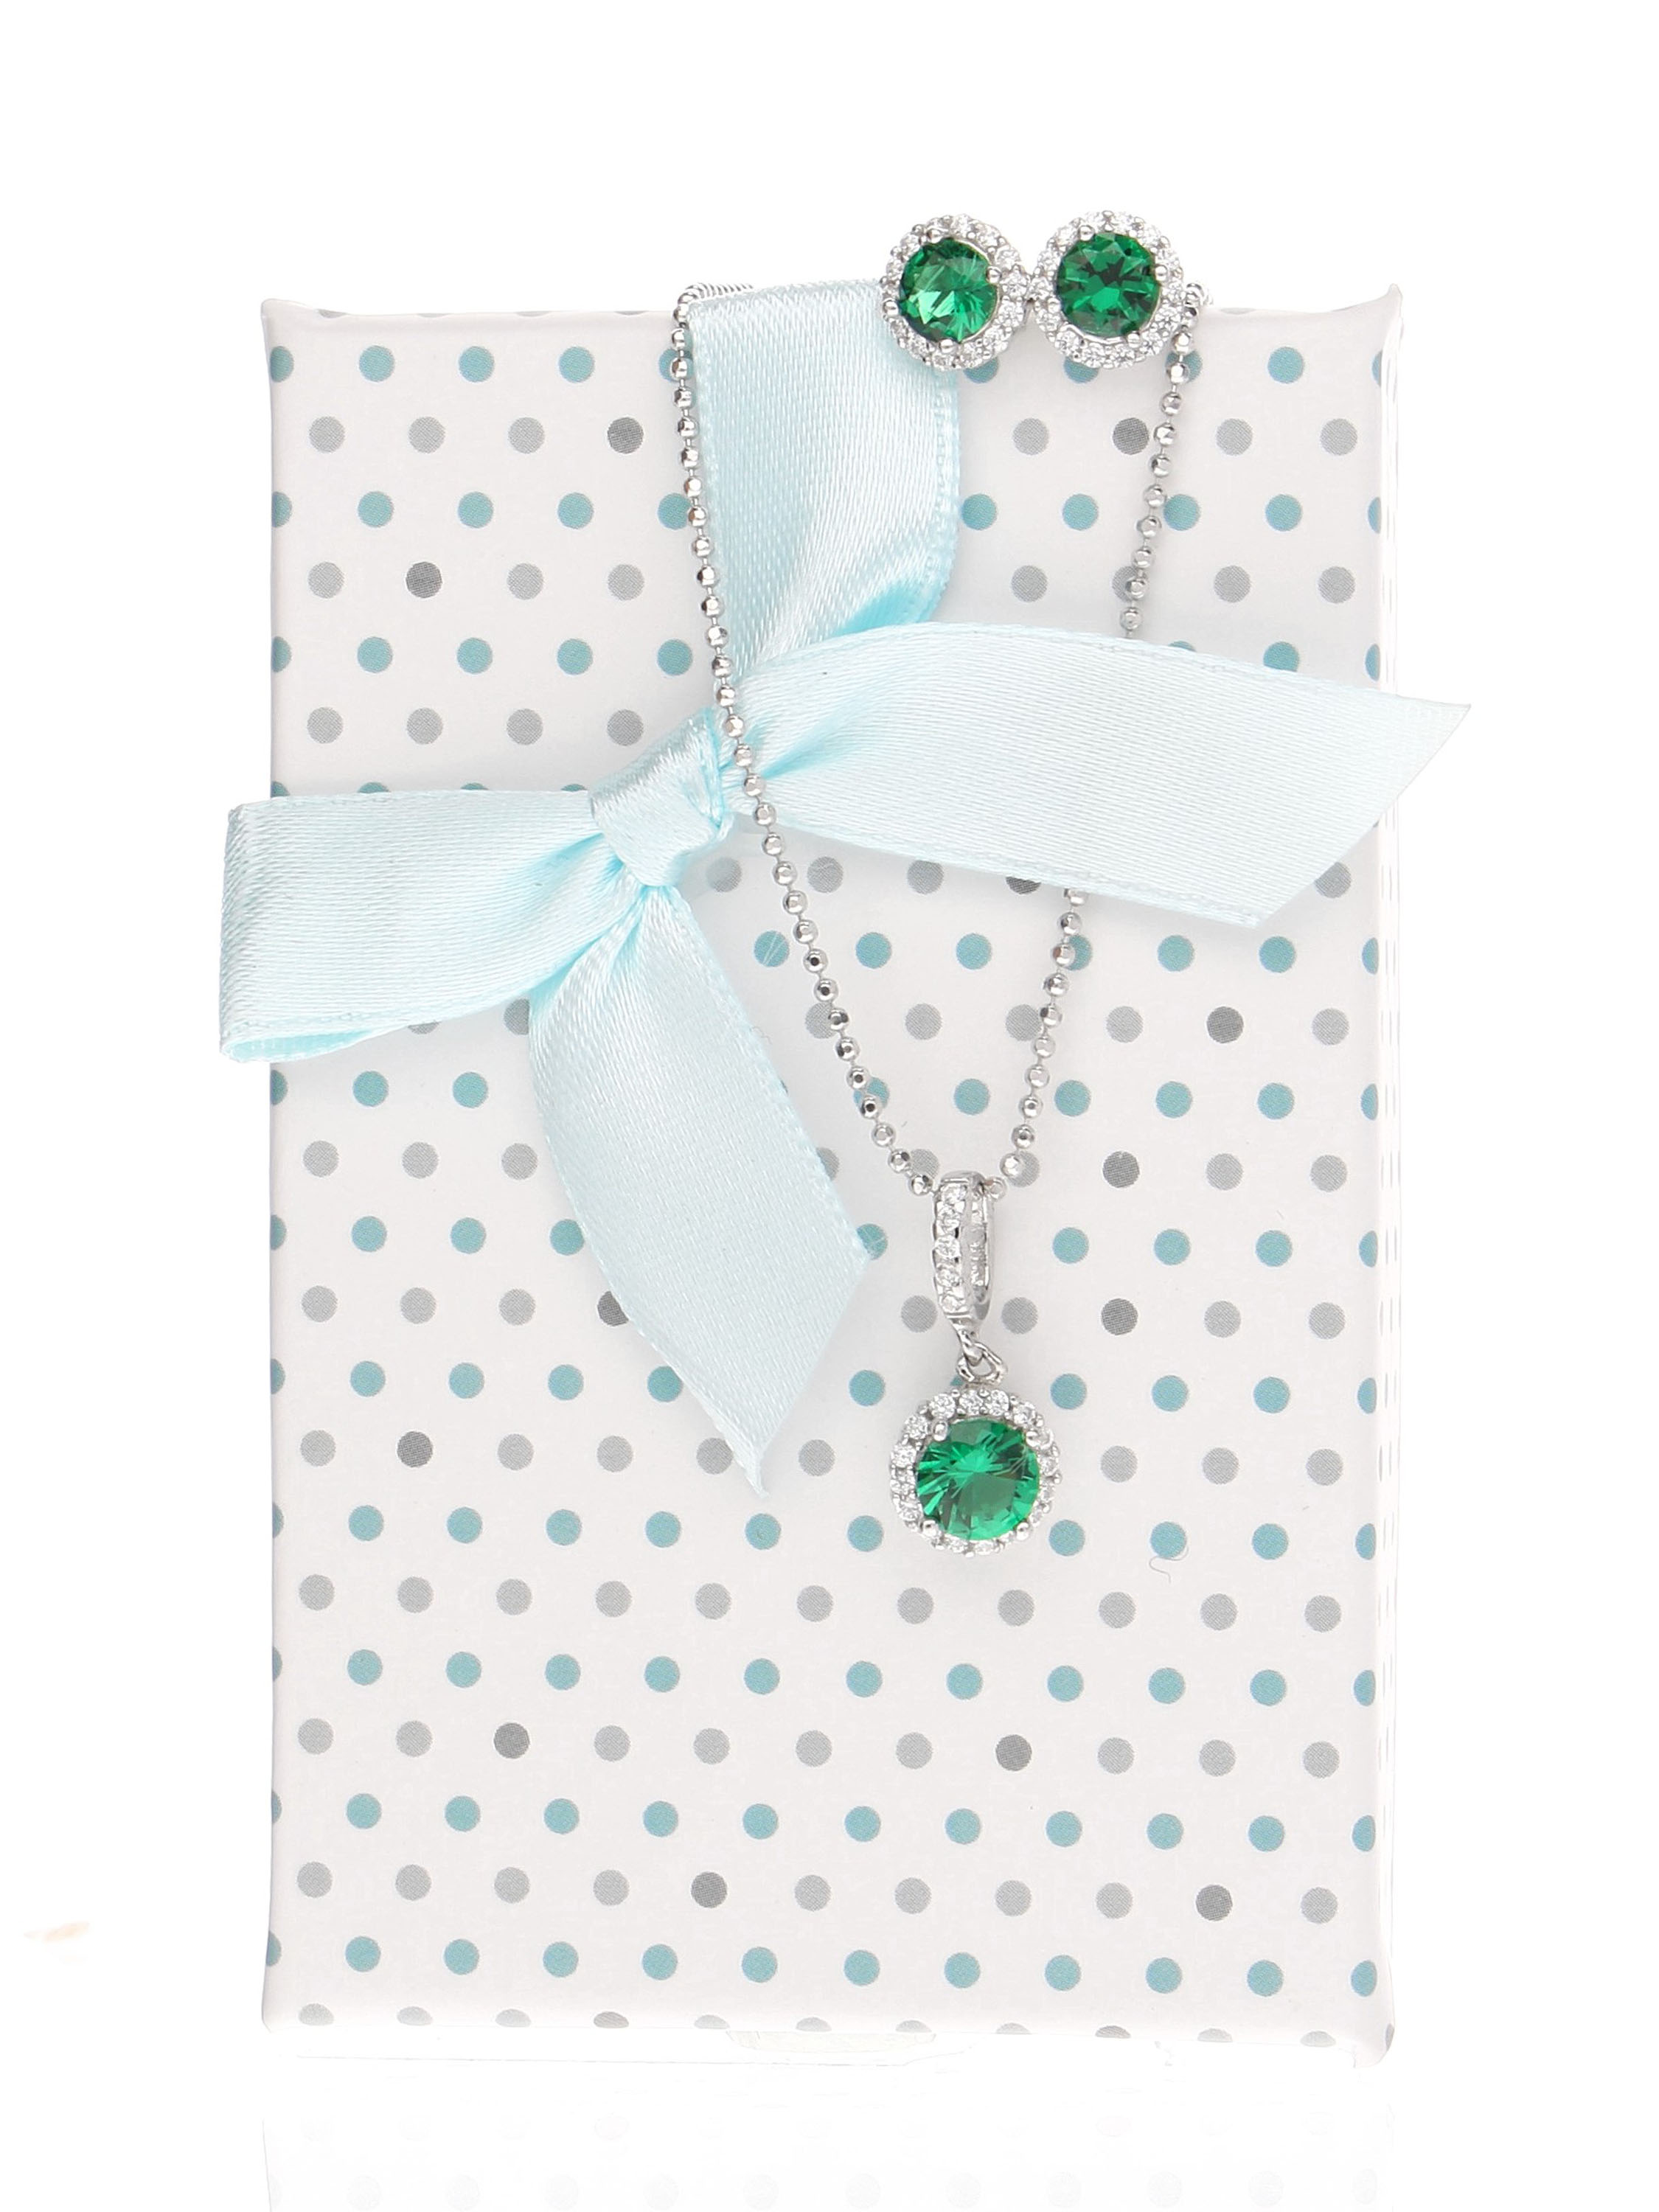 Bepunktete Geschenkschachtel mit schöner Satinschleife für das grüne Amazone Set | Verpackung